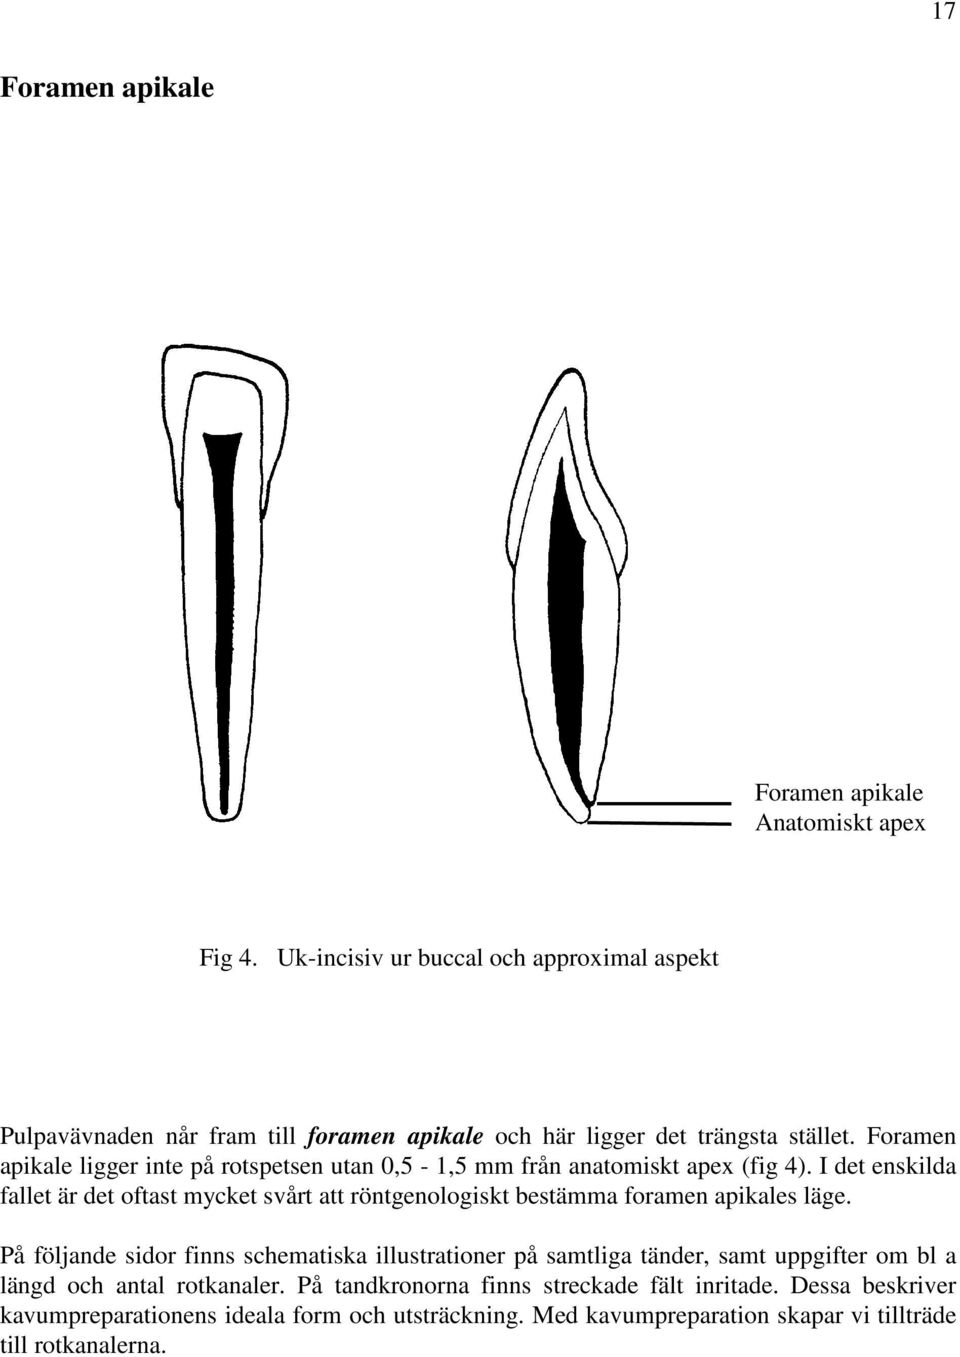 Foramen apikale ligger inte på rotspetsen utan 0,5-1,5 mm från anatomiskt apex (fig 4).